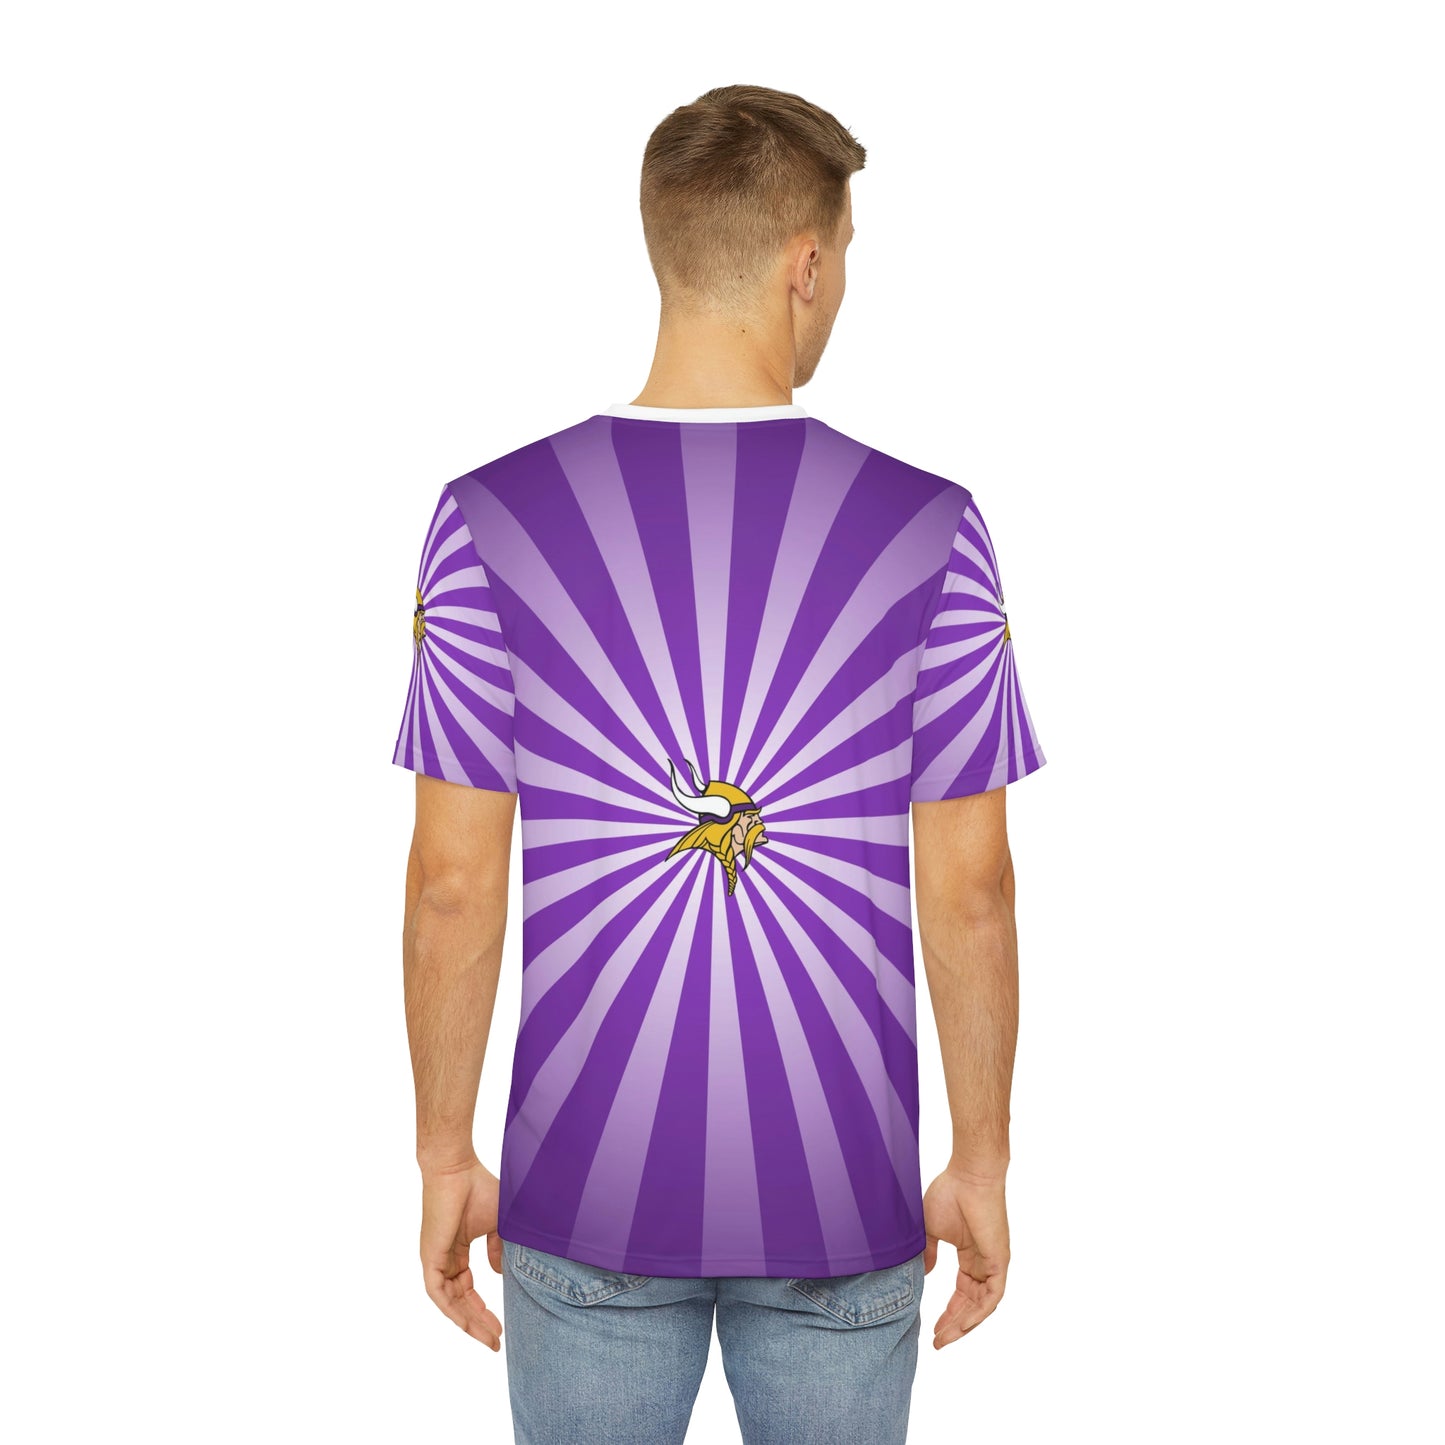 Geotrott NFL Minnesota Vikings Men's Polyester All Over Print Tee T-Shirt